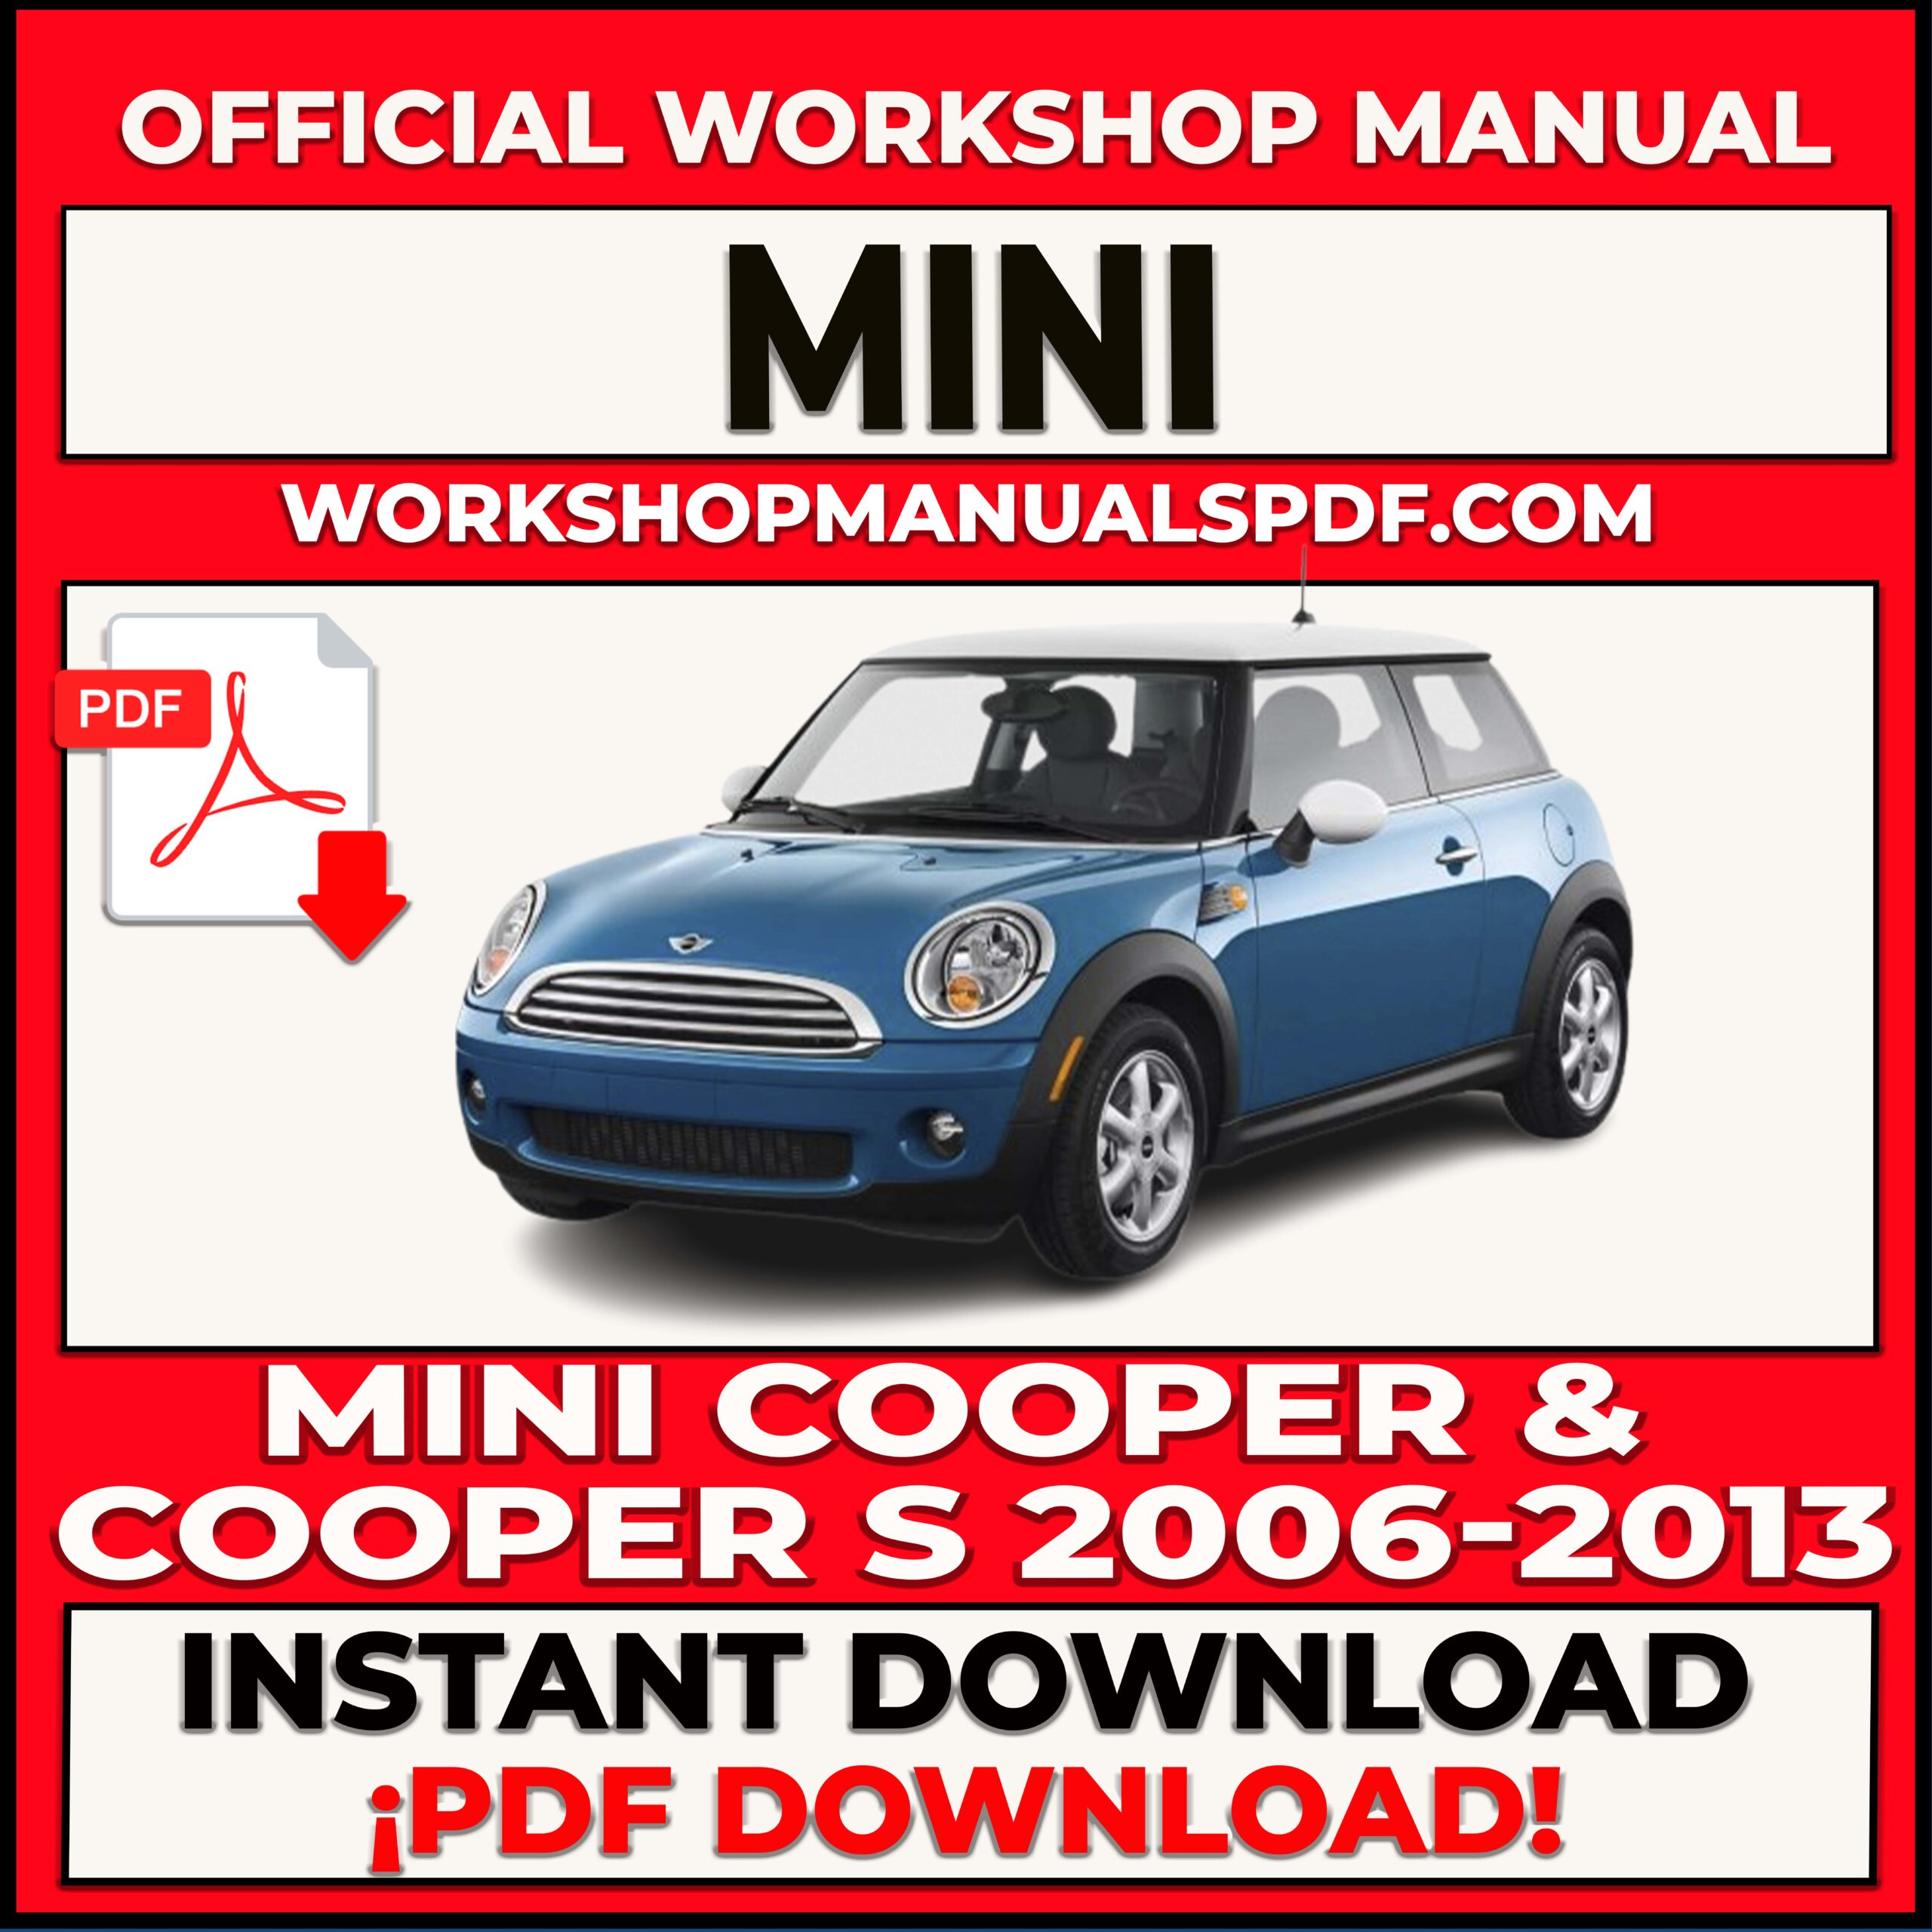 Mini Cooper and Cooper S (2006-2013) Workshop Repair Manual